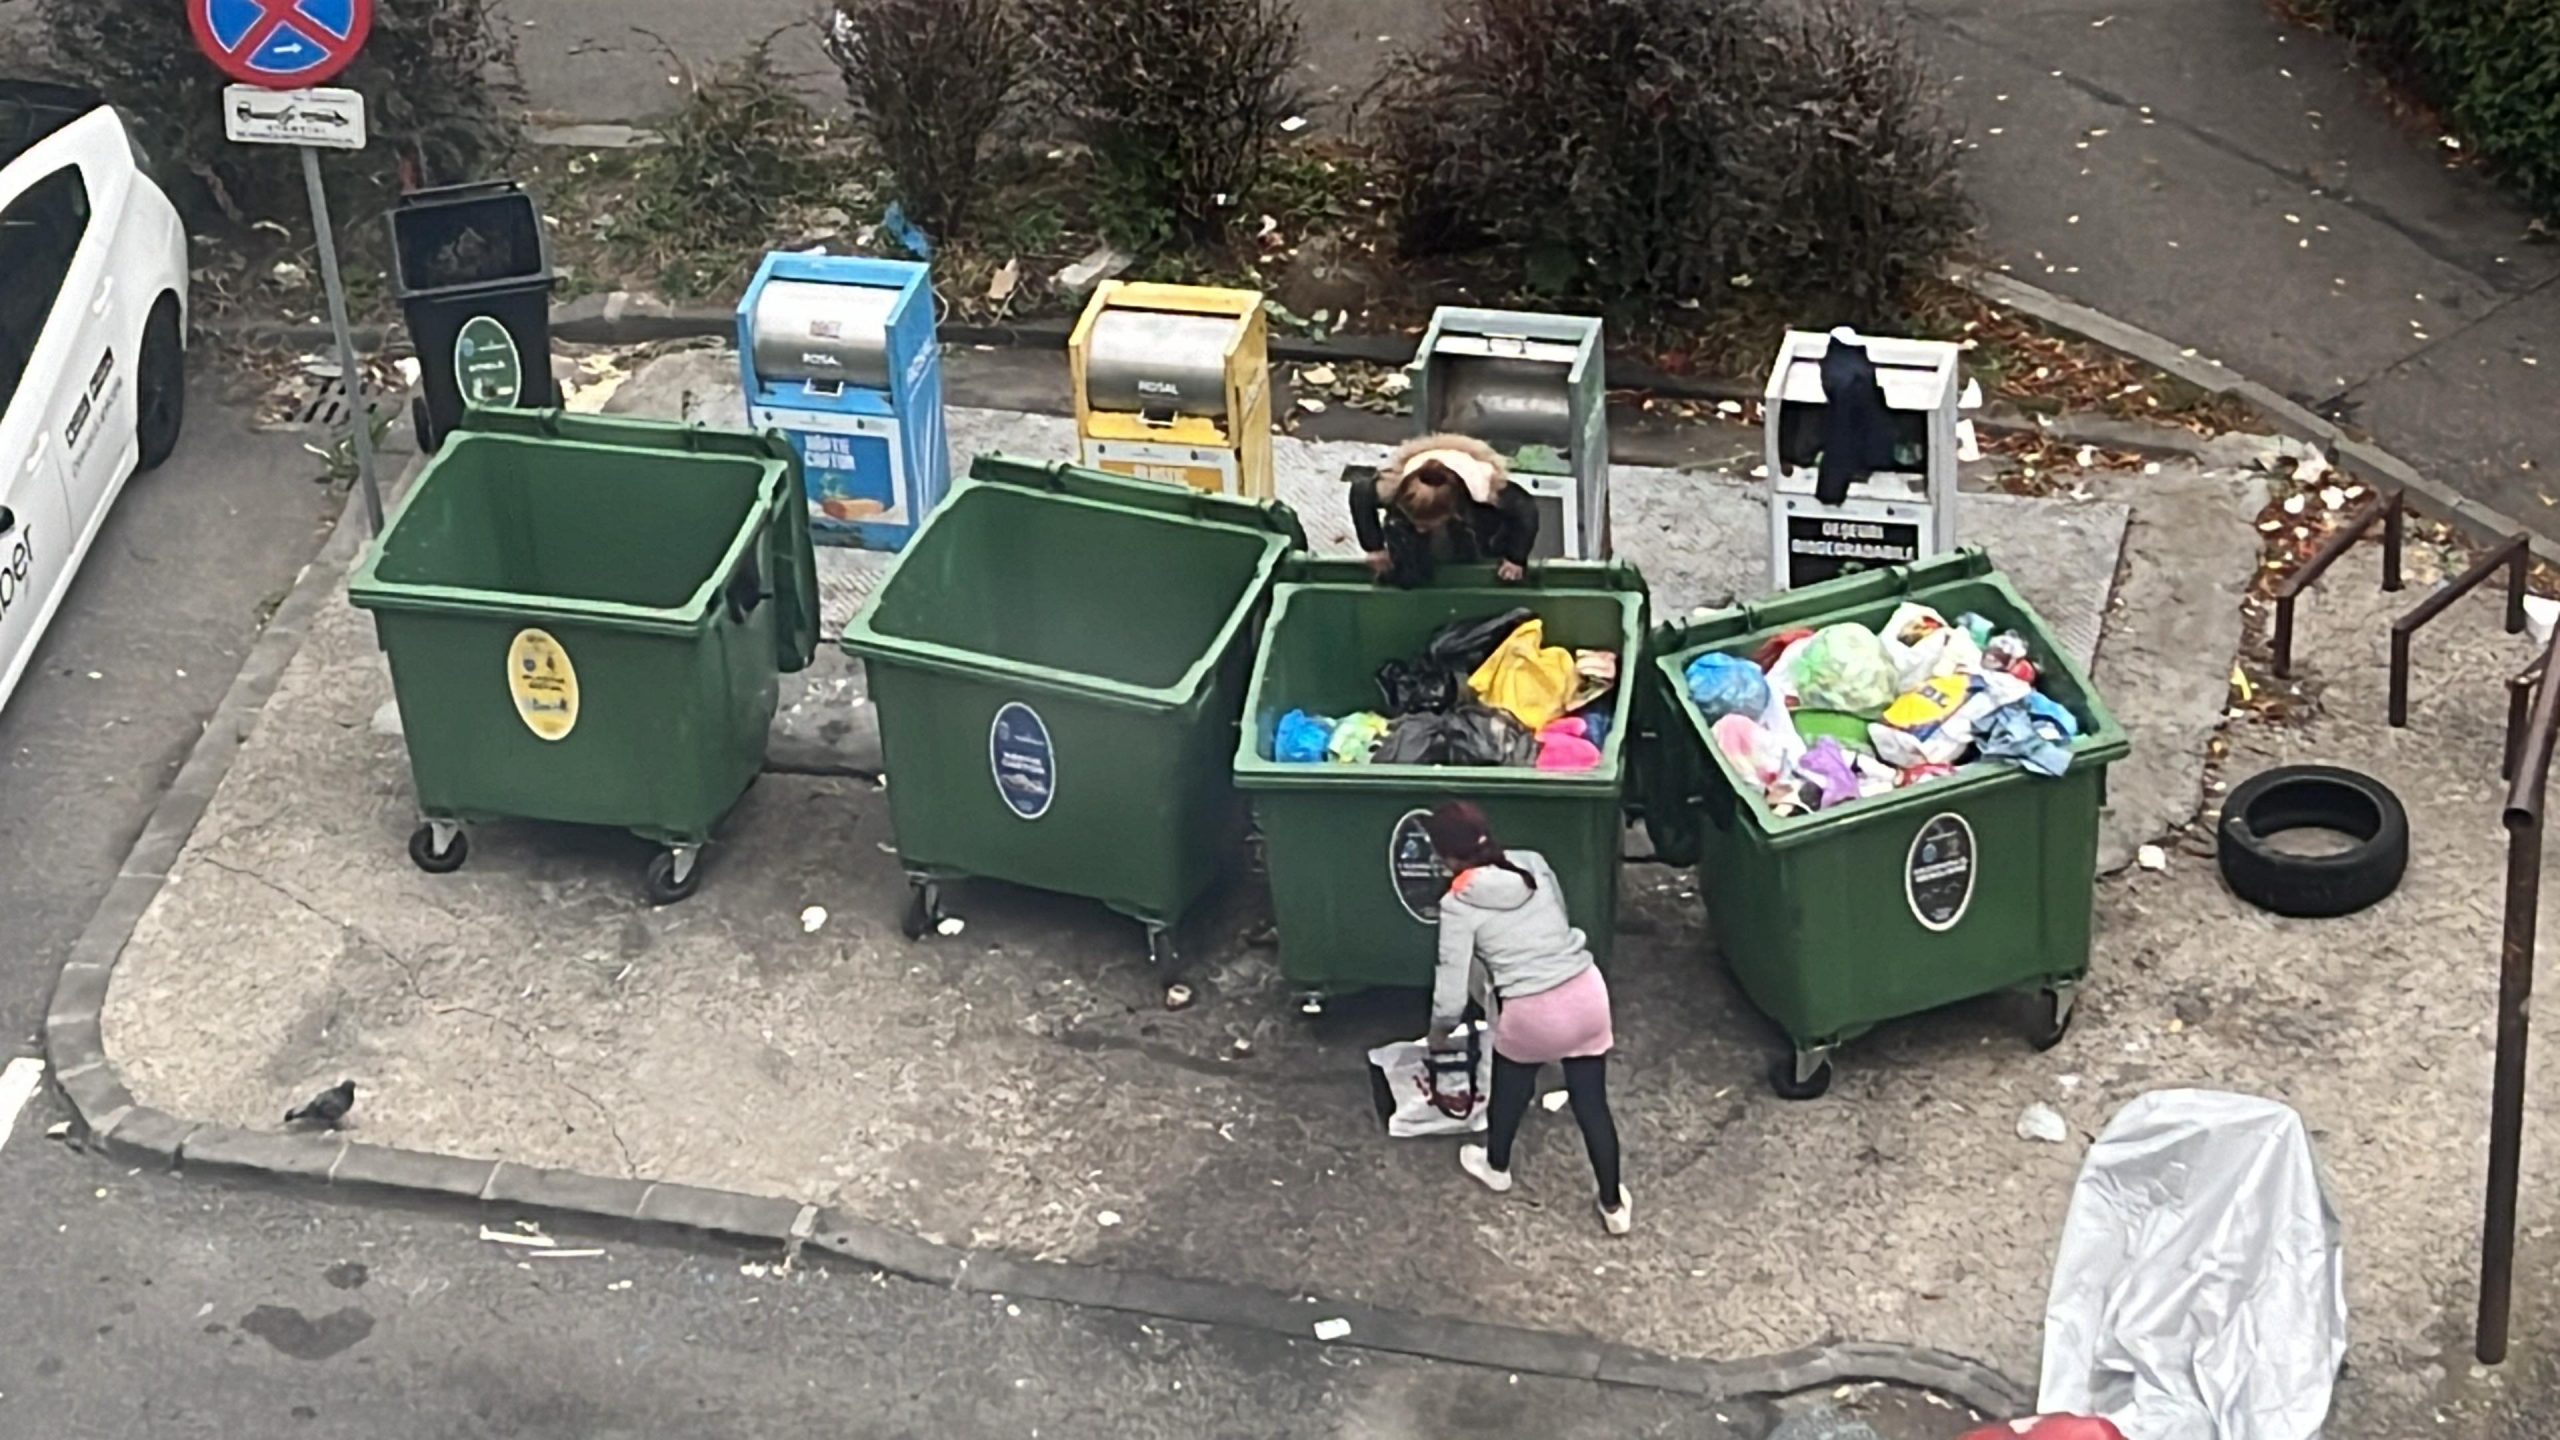 Clujul ”smart” dă erori! Prima platformă subterană de colectare a deșeurilor este nefuncțională și s-a optat pentru o ”românească” - FOTO